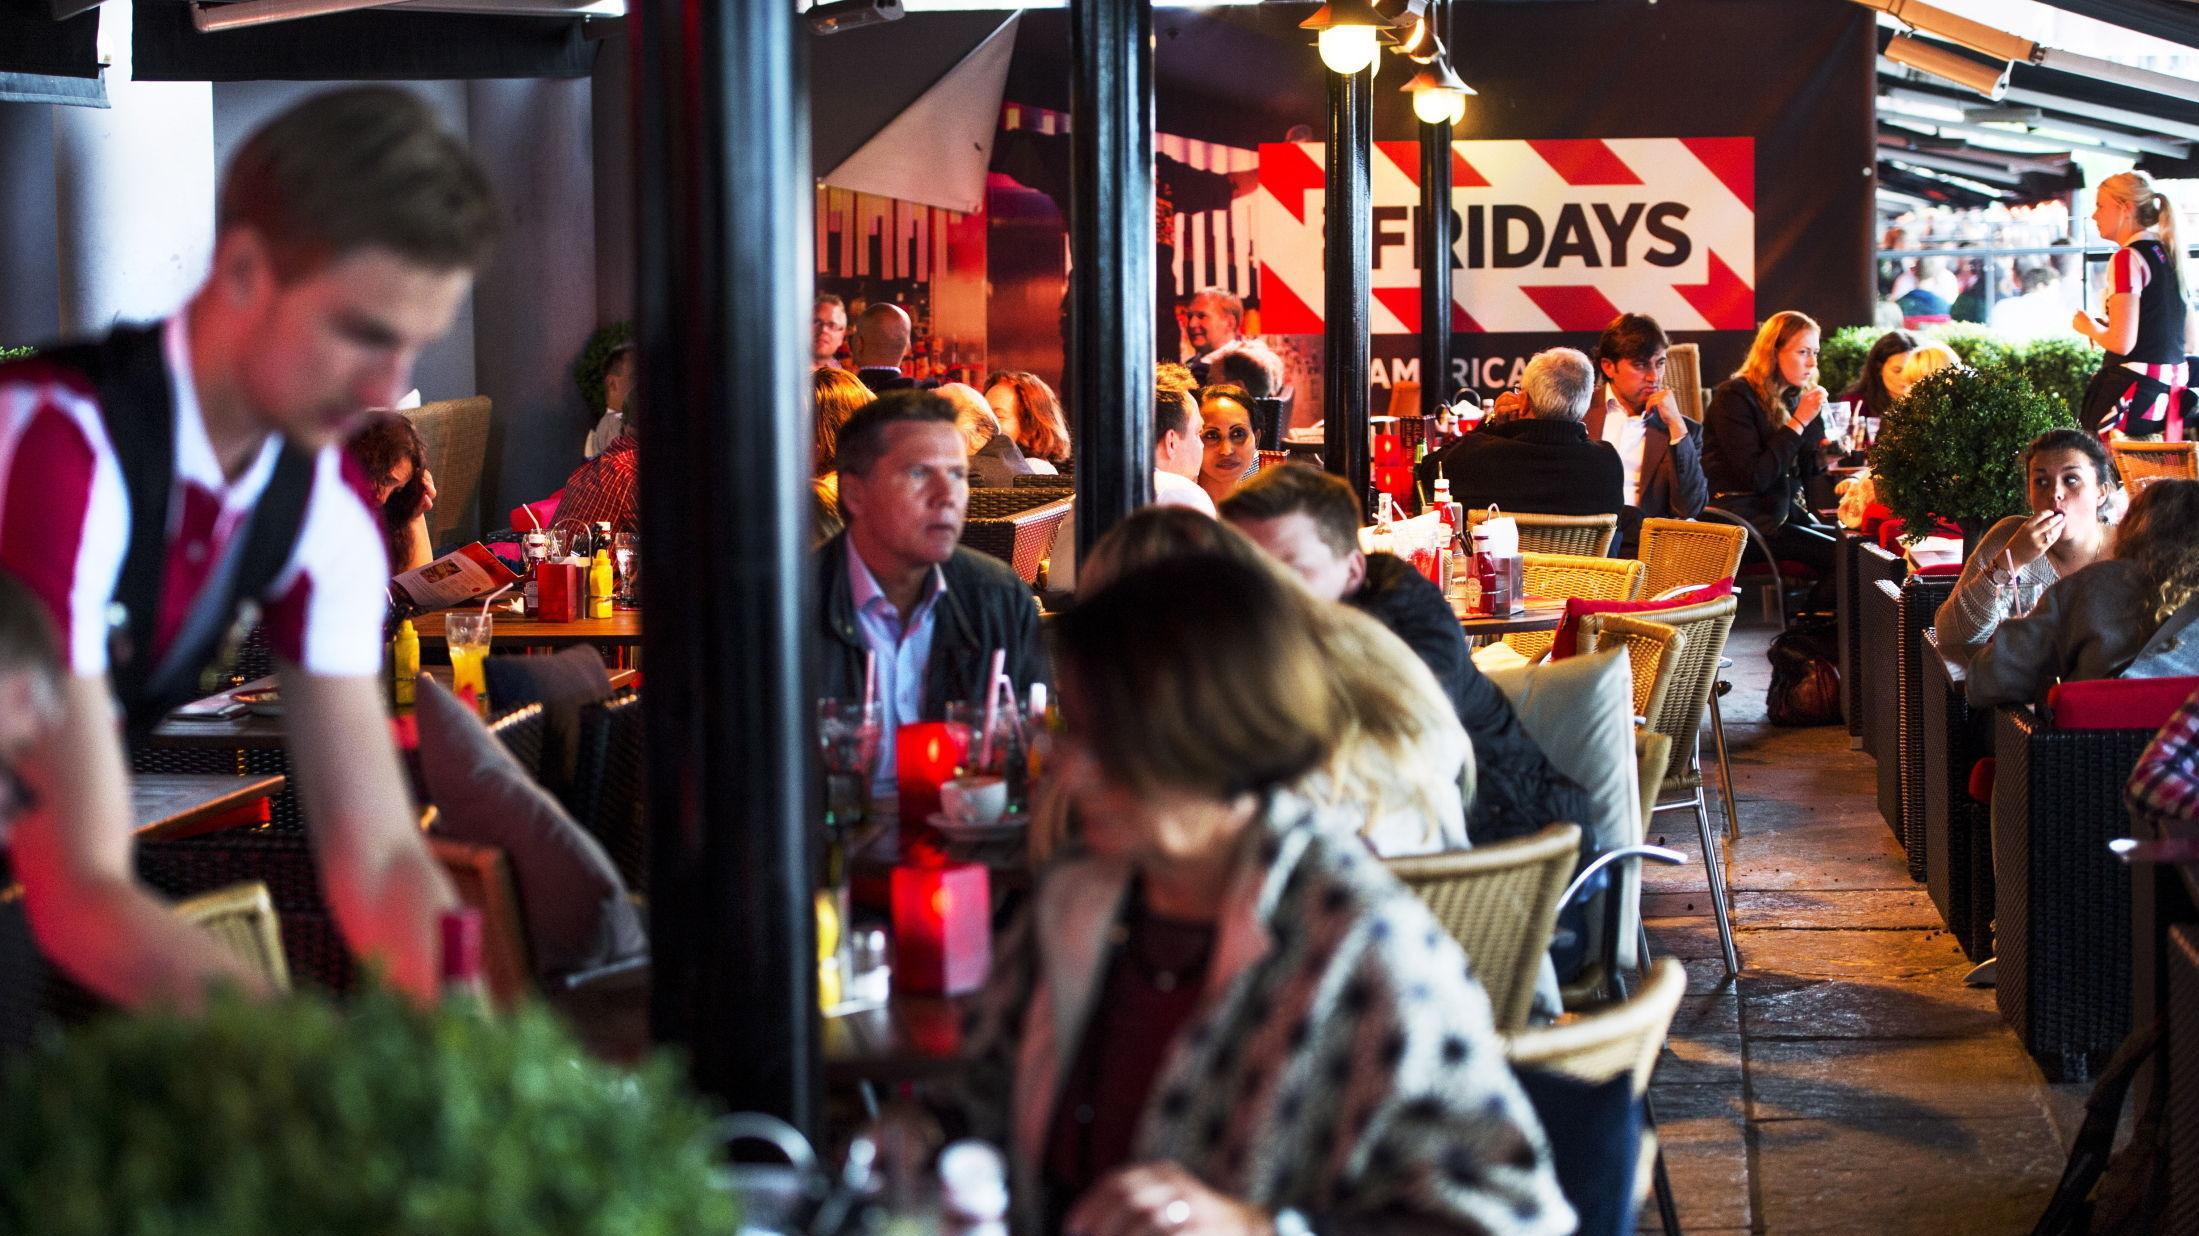 POPULÆRT: Hver dag er fredag på Friday's. Selv en tirsdag ettermiddag er det lange køer på restauranten på Aker brygge. Foto: Helge Mikalsen/VG